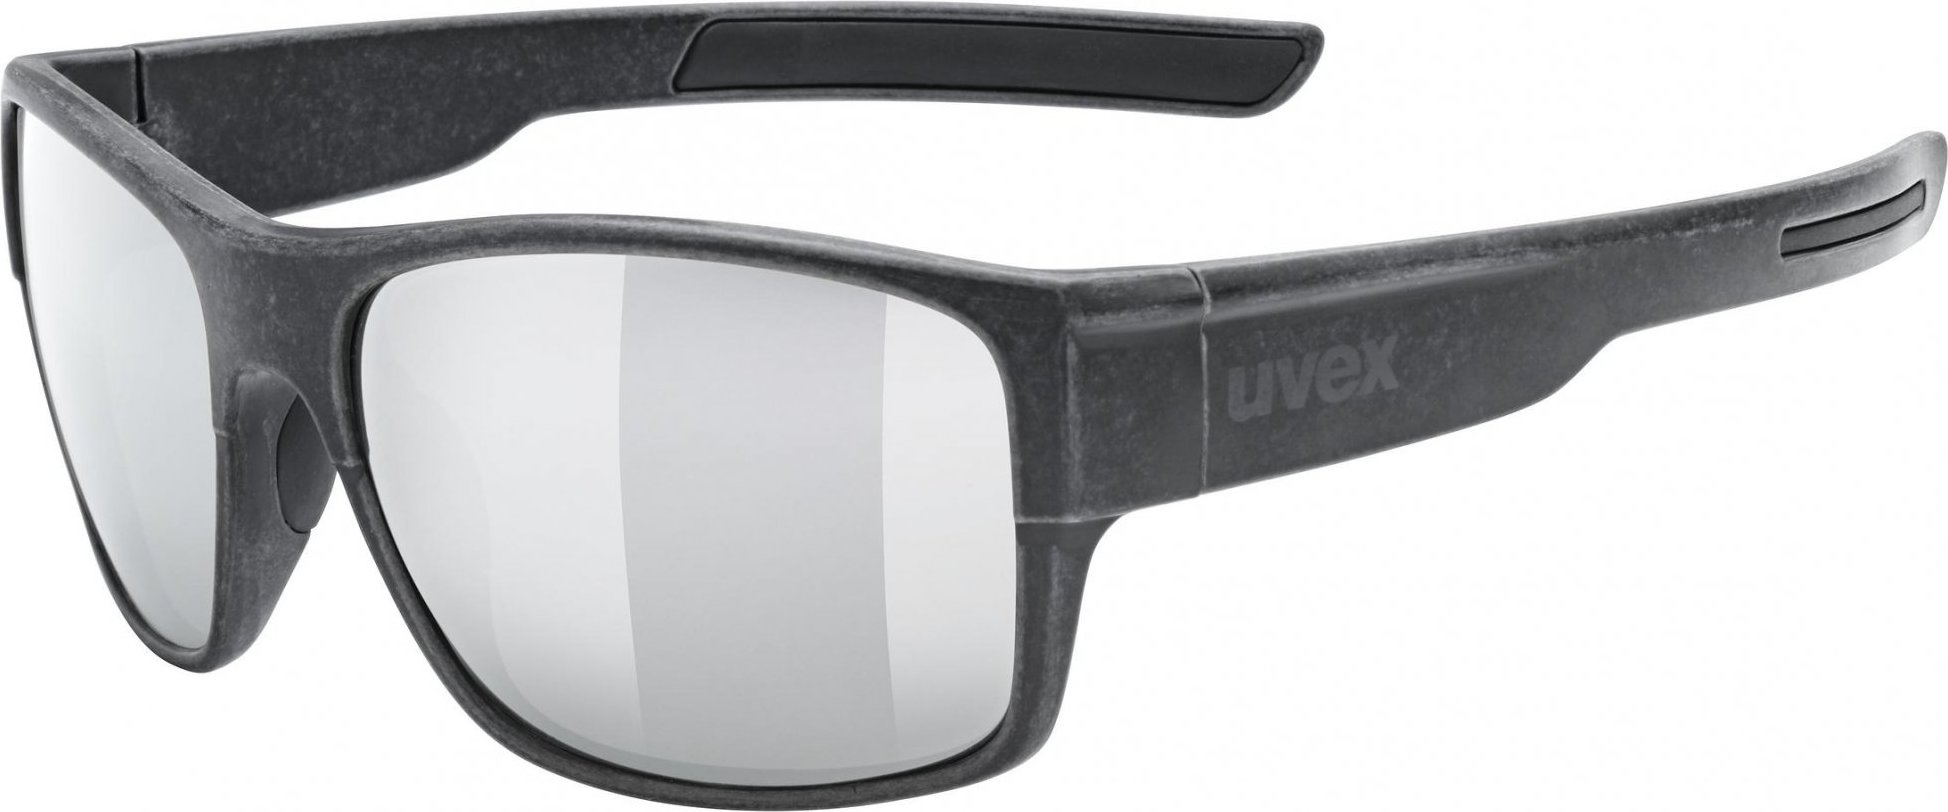 Sluneční brýle UVEX ESNTL Urban černé